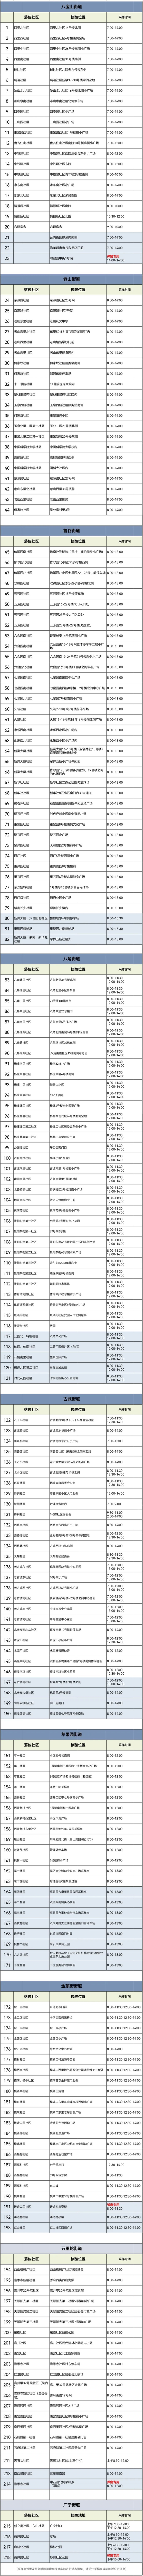 北京昨日新增本土新冠感染者1282＋3240含社会面609例董腾老师全系统班的视频